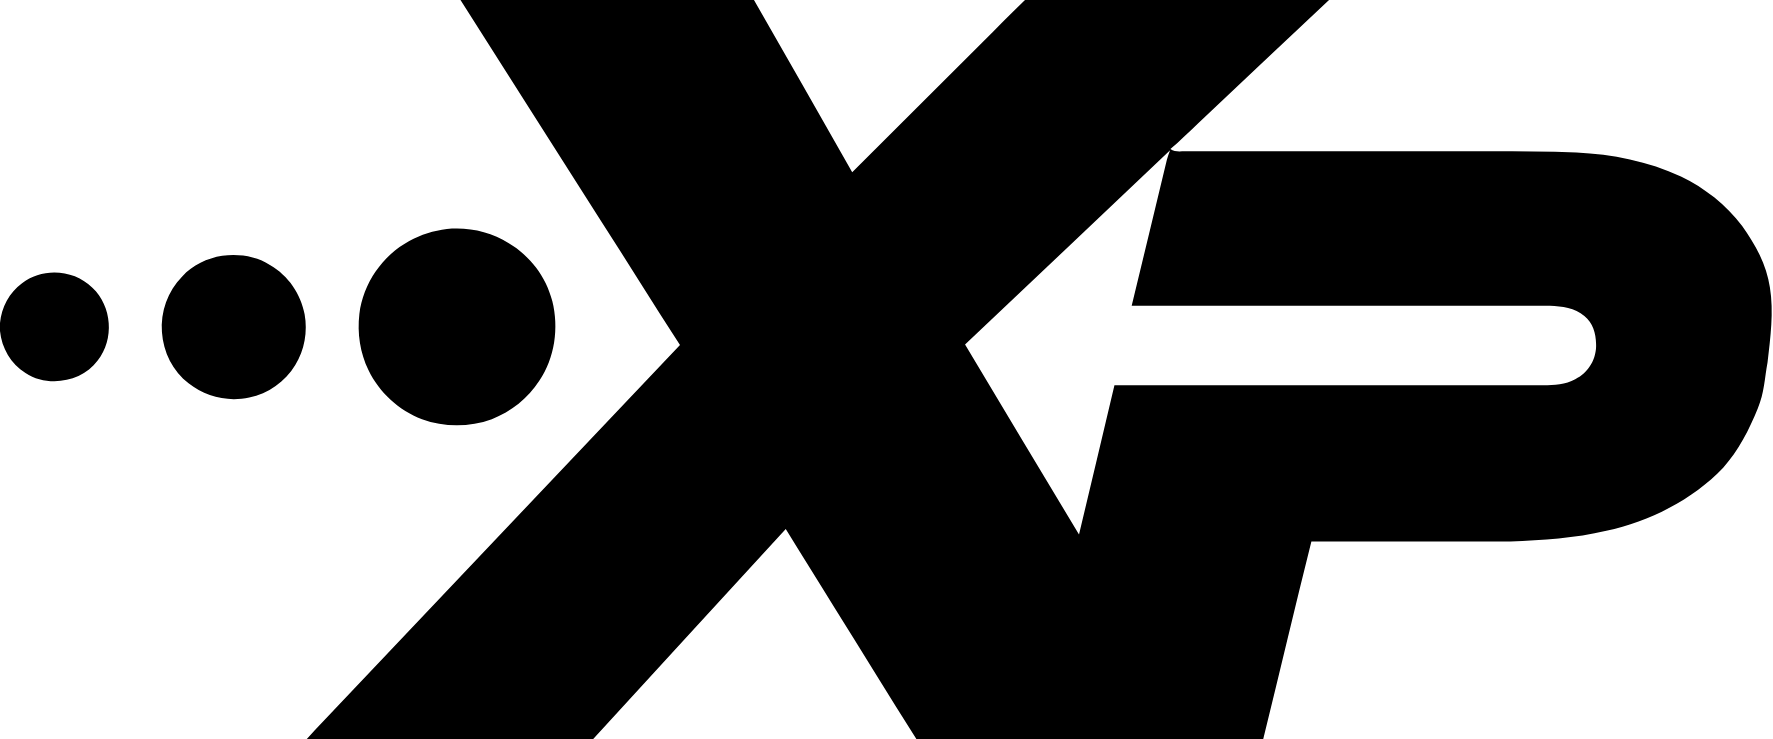 XPEL logo (transparent PNG)